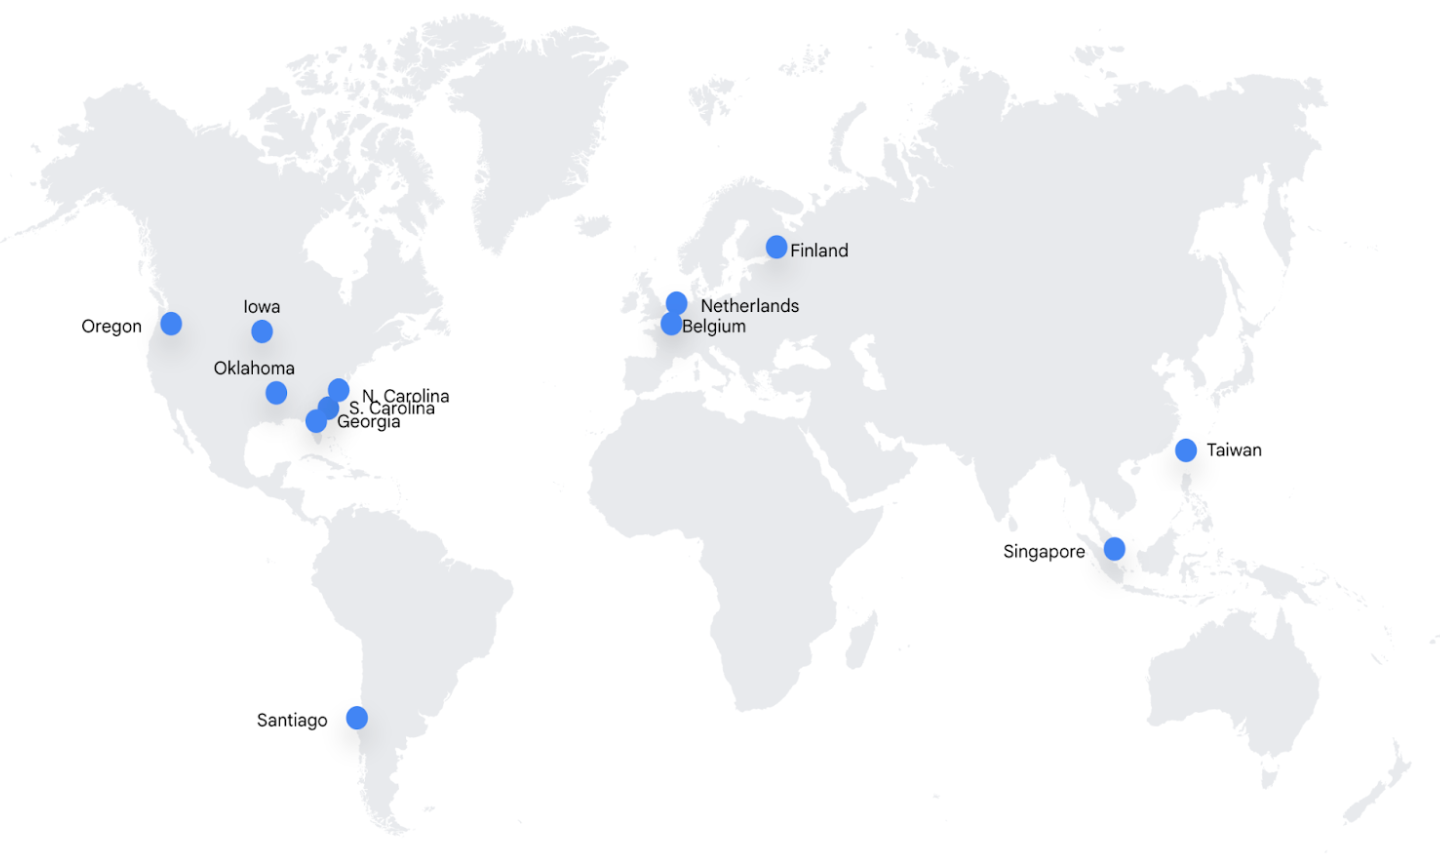 Peta dunia yang menampilkan lokasi pusat data sebagai titik biru